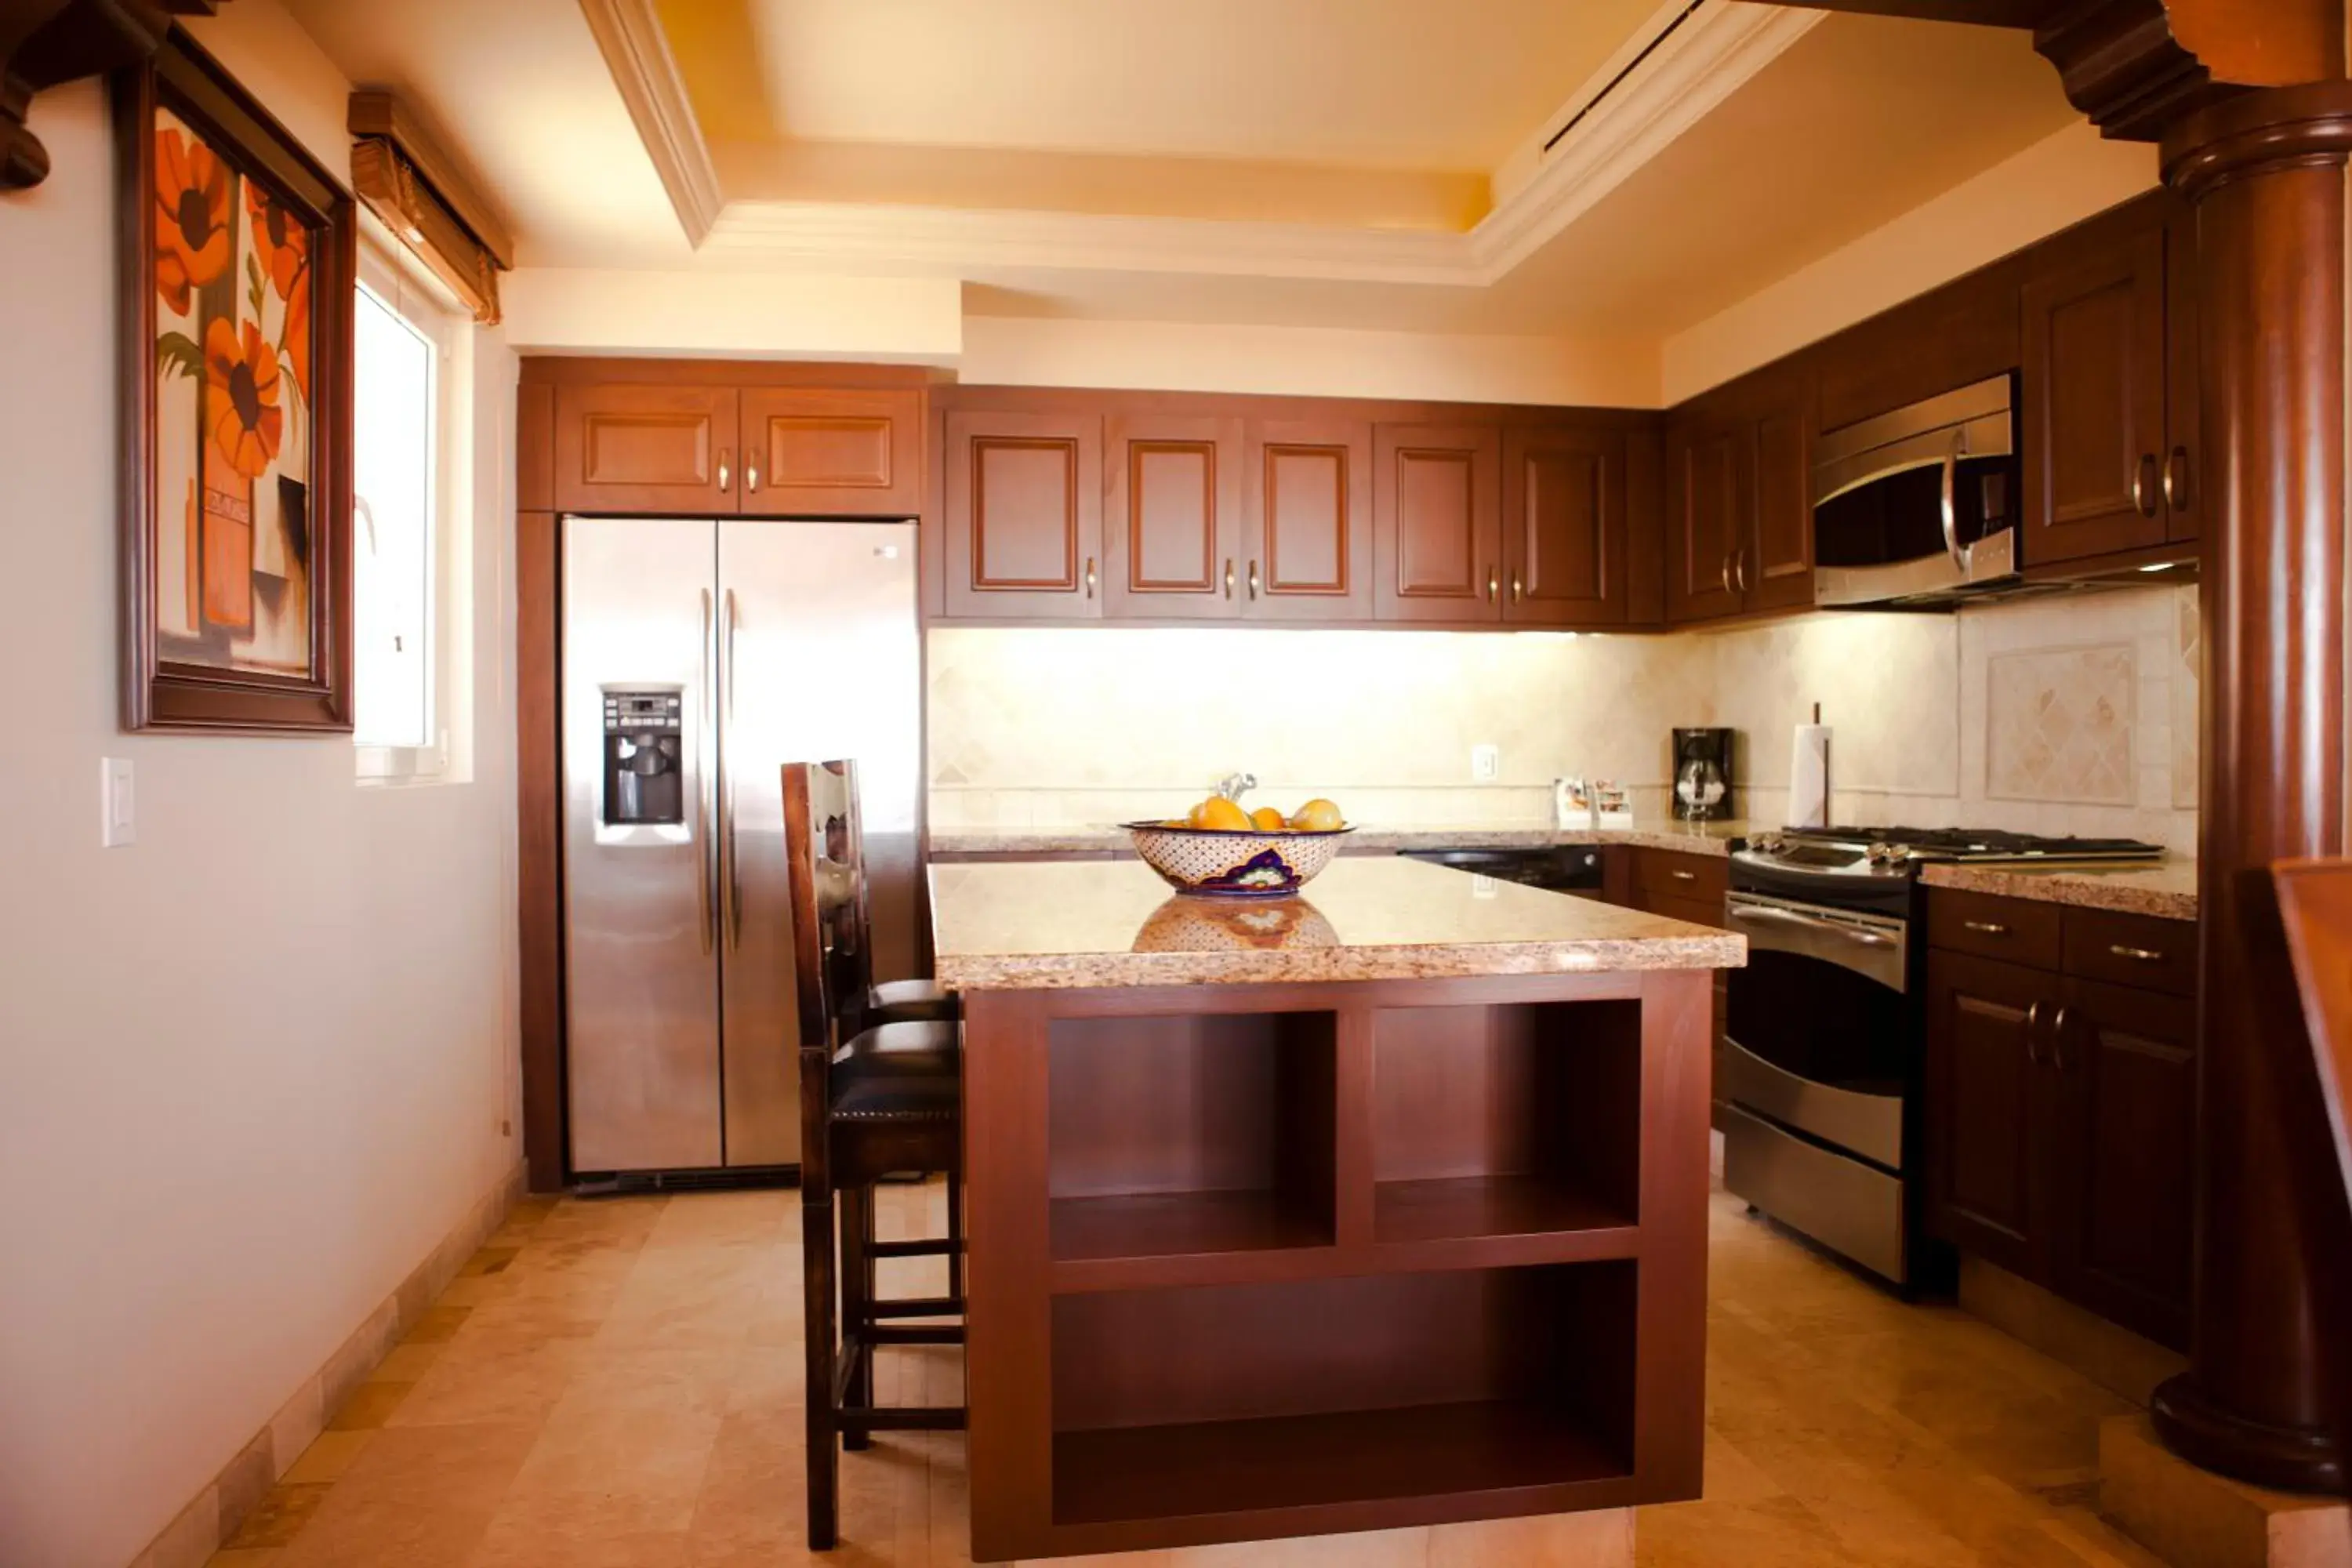 Kitchen or kitchenette, Kitchen/Kitchenette in Pueblo Bonito Montecristo Luxury Villas - All Inclusive